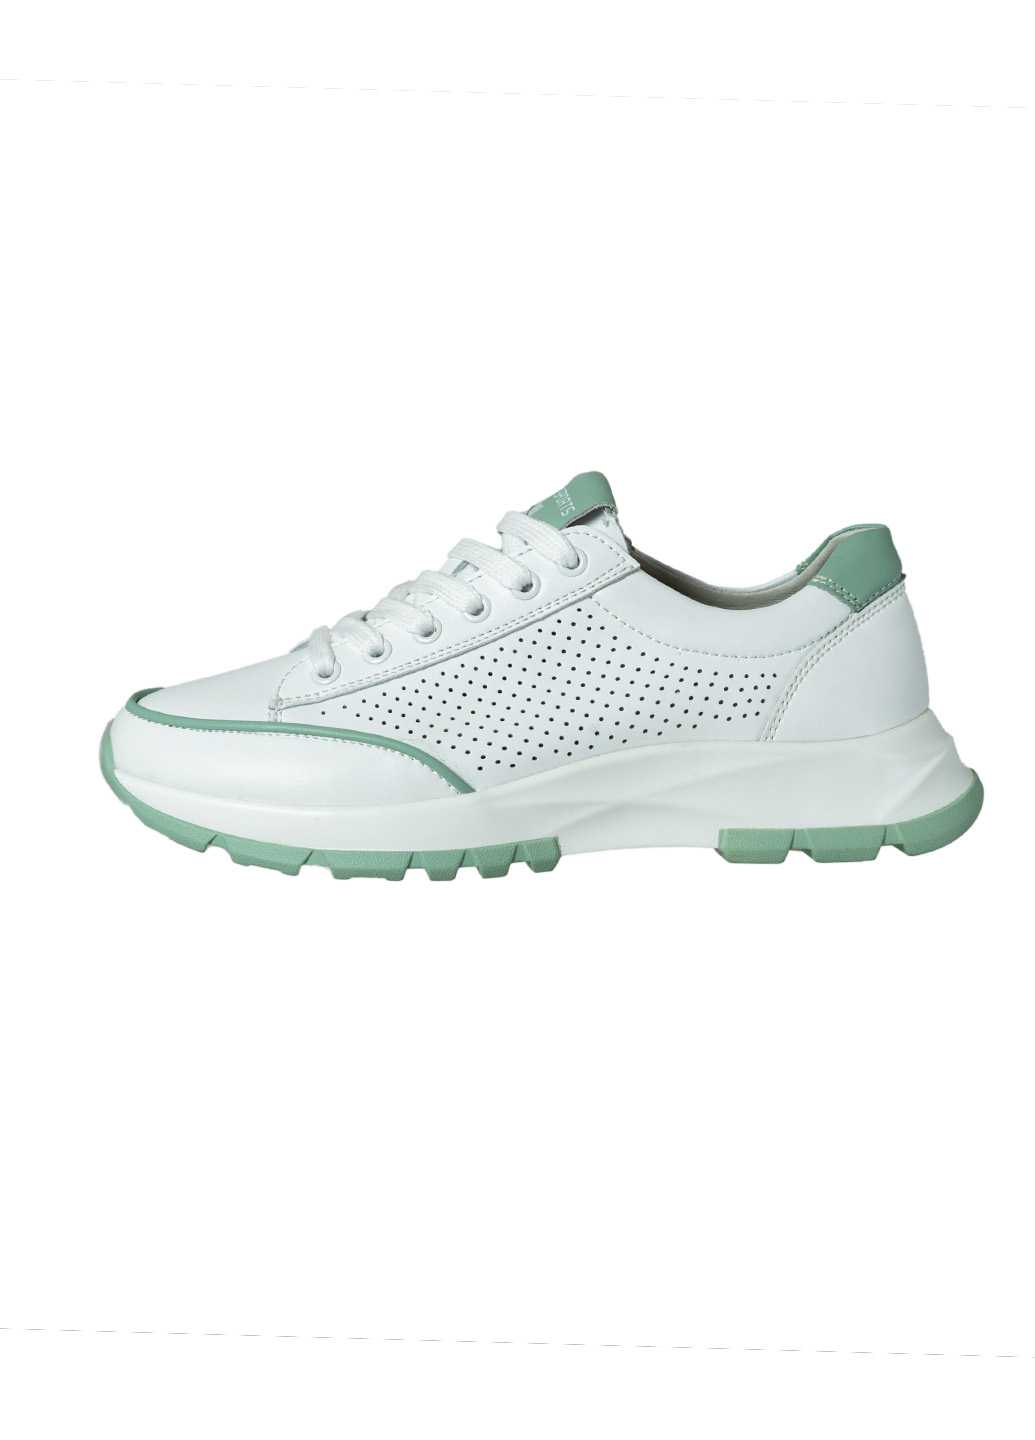 Жіночі кросівки Lifexpert білого кольору з перфорацією та зеленими вставками